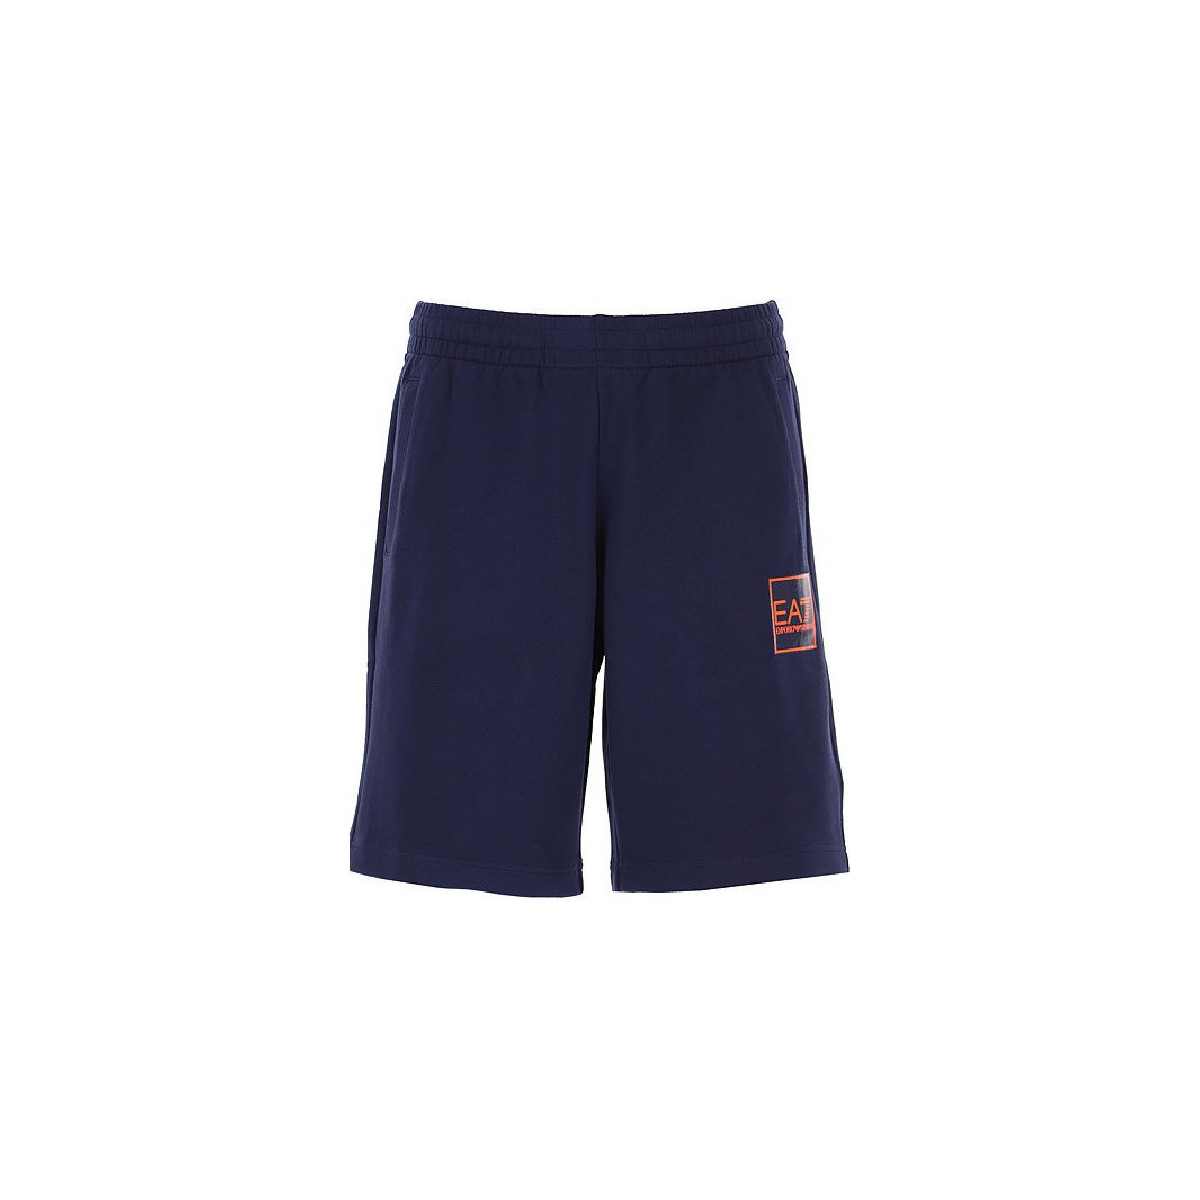 Vêtements Homme Shorts / Bermudas Emporio Armani EA7 Short homme EA7 bleu et orange 3LPS53 PJEQZ - XS Bleu